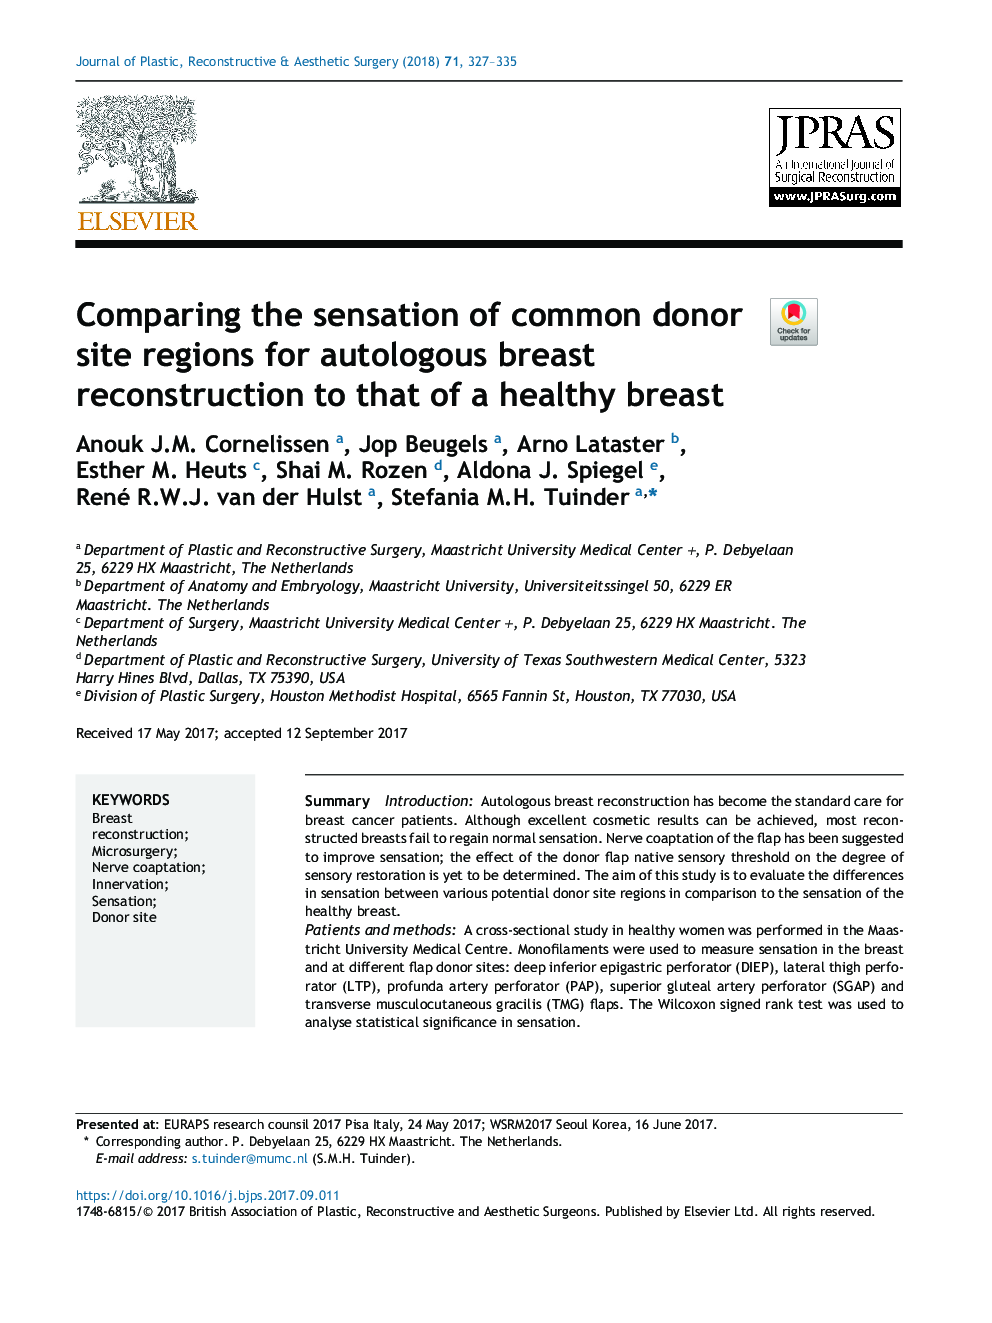 مقایسۀ حساسیت مناطق ناحیه مشترک اهدا کننده برای بازسازی سینه اتولوگ به پستان سالم 